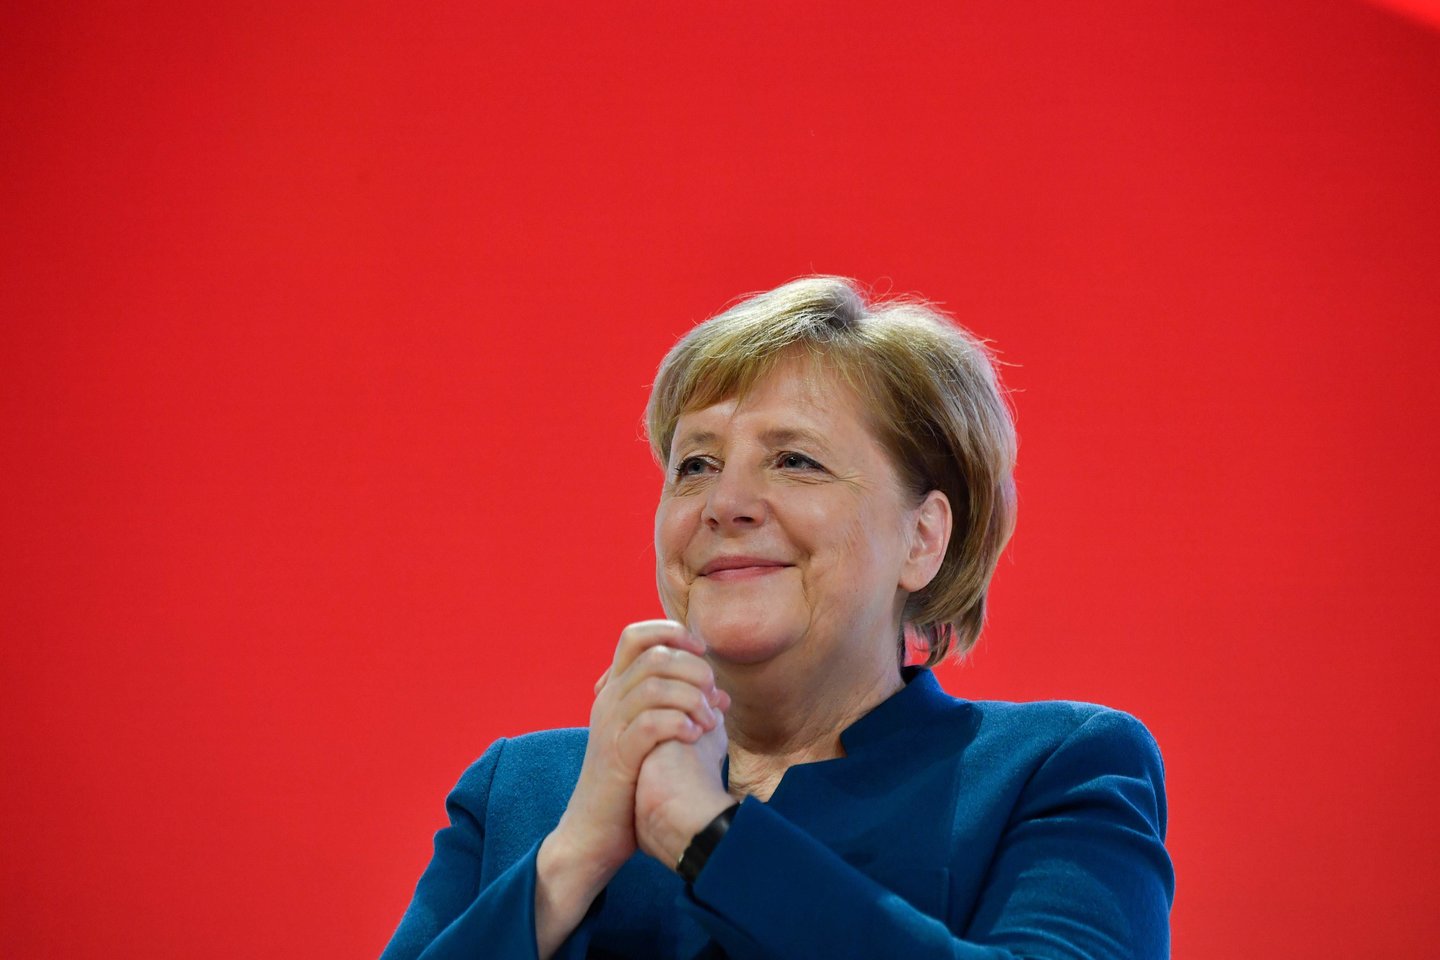  Vokietijos kanclerė Angela Merkel penktadienį traukdamasi iš savo partijos lyderio posto gynė šios partijos pamatines krikščioniškas ir demokratines vertybes.<br> AFP/Scanpix nuotr.